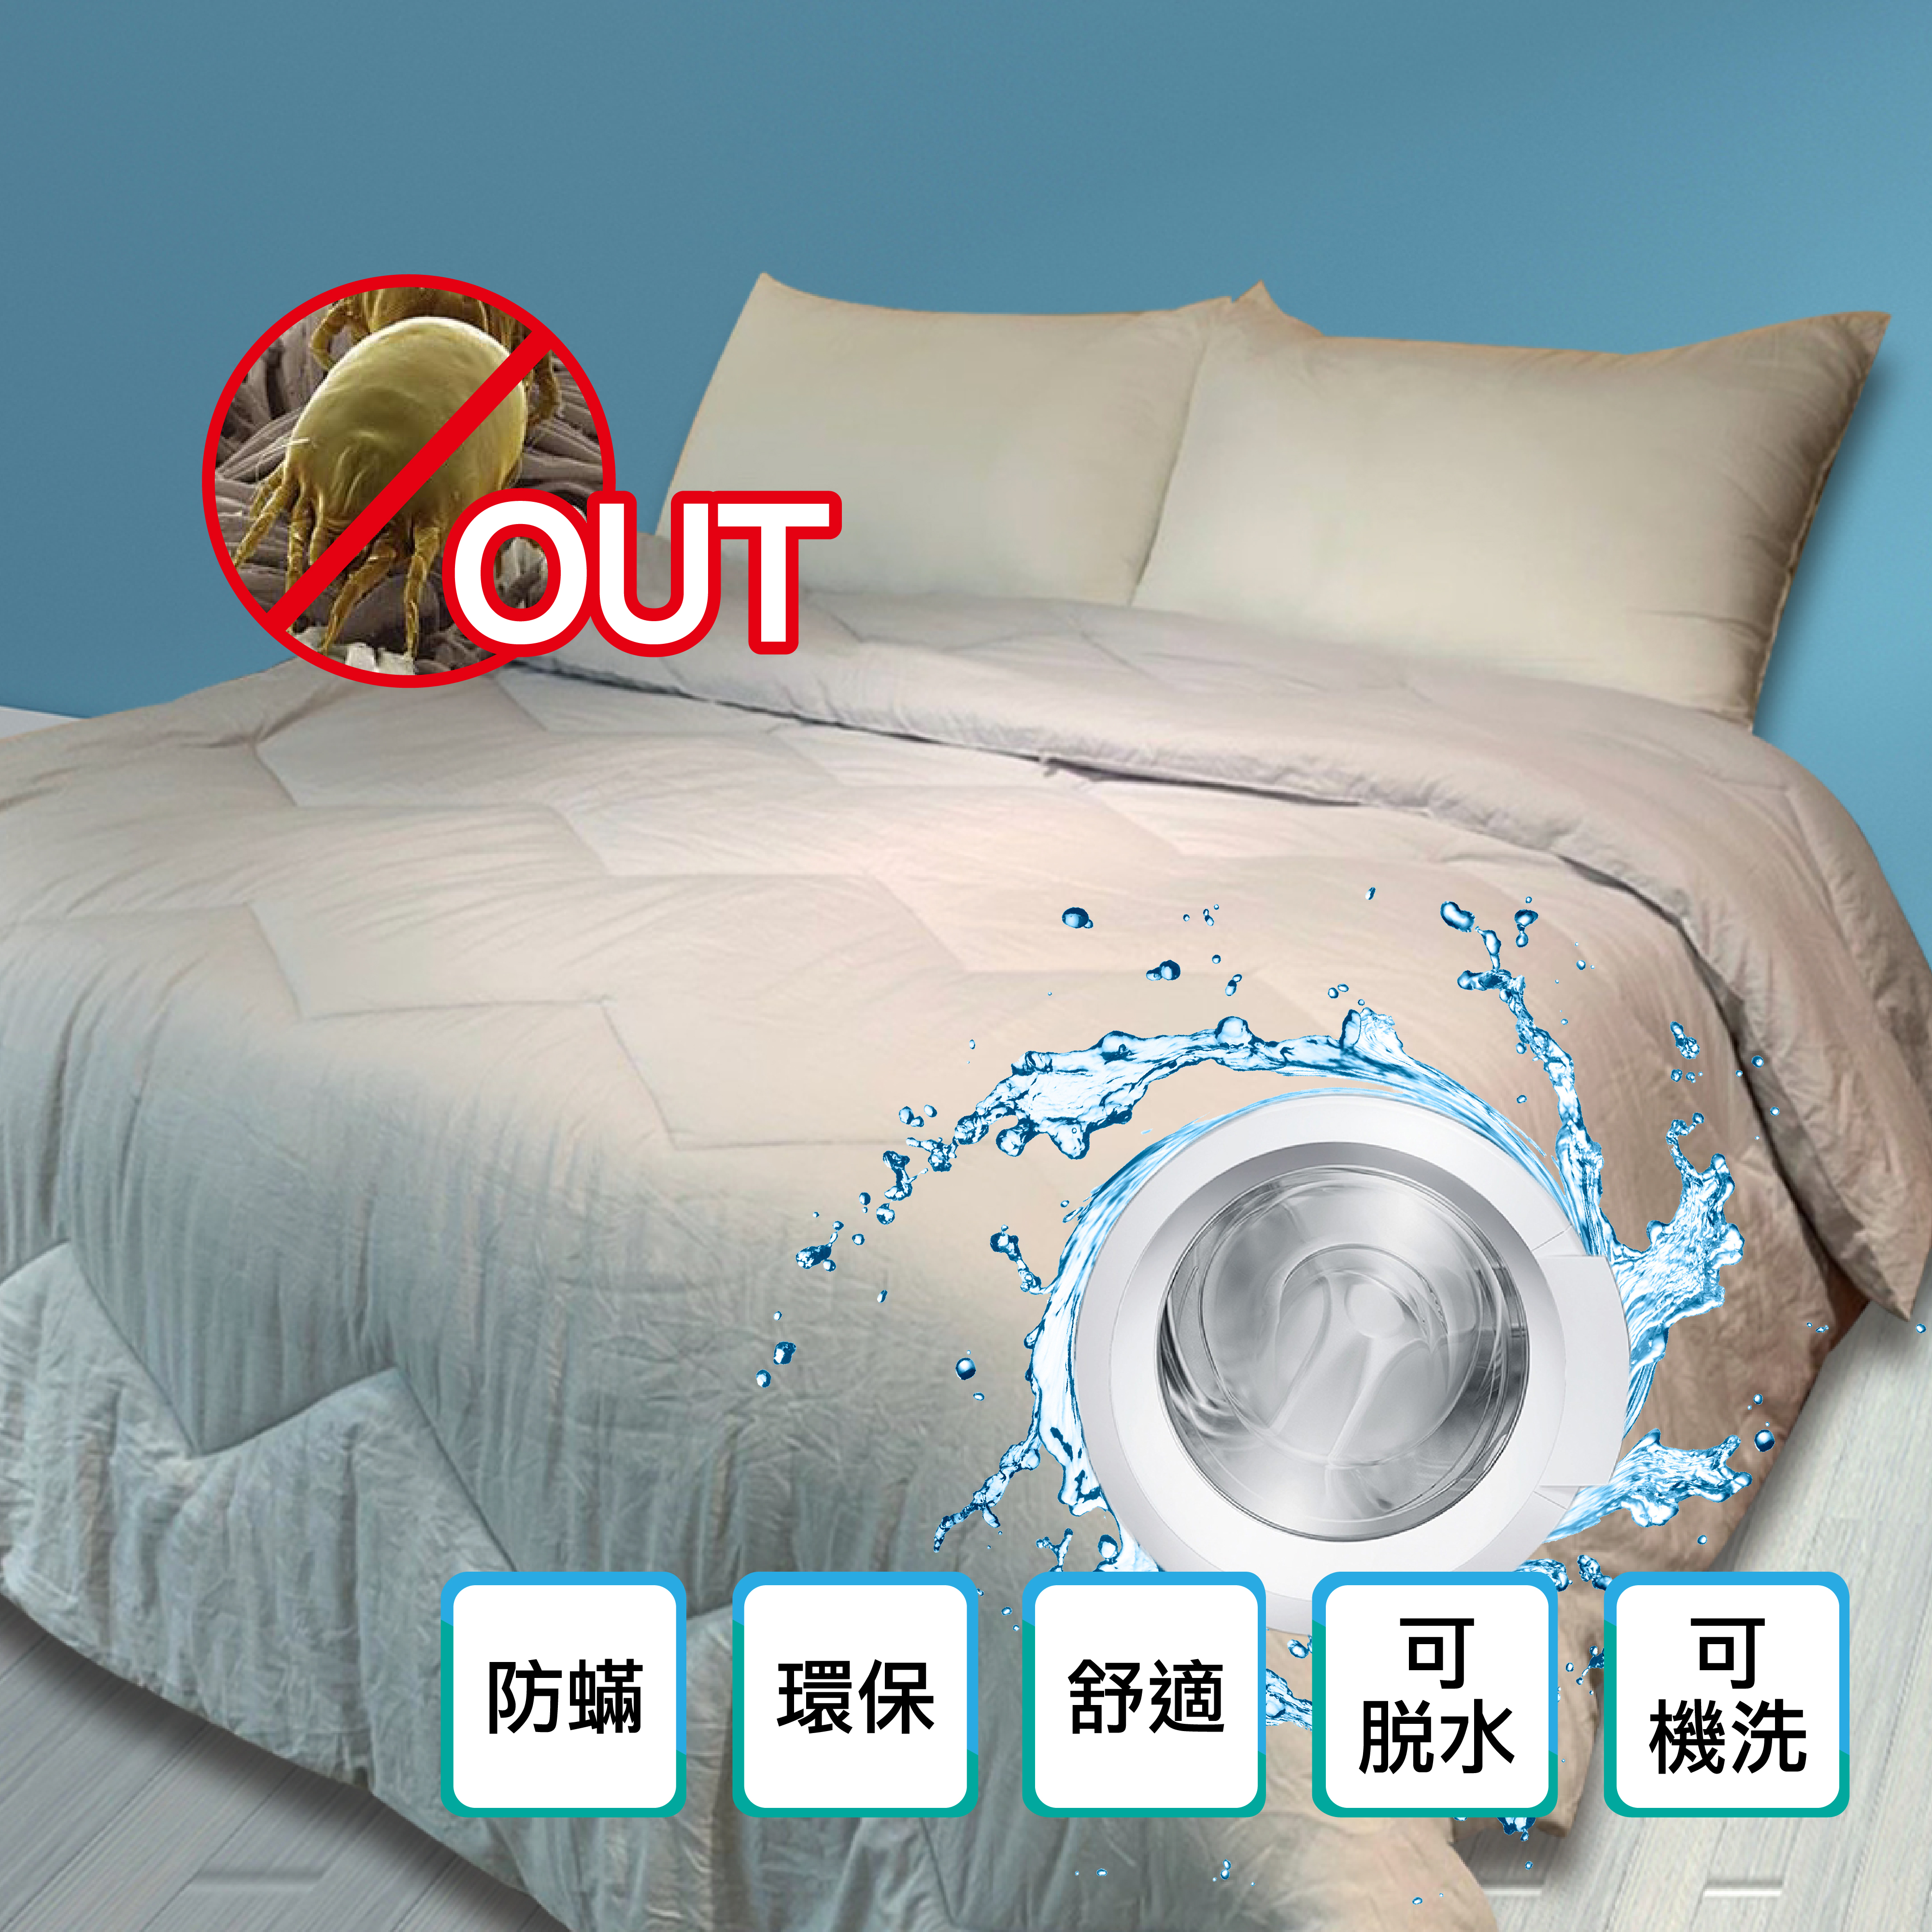 床包推薦,床包組推薦,保暖床包,涼感床包,超值床包組-寶松寢飾官方網站